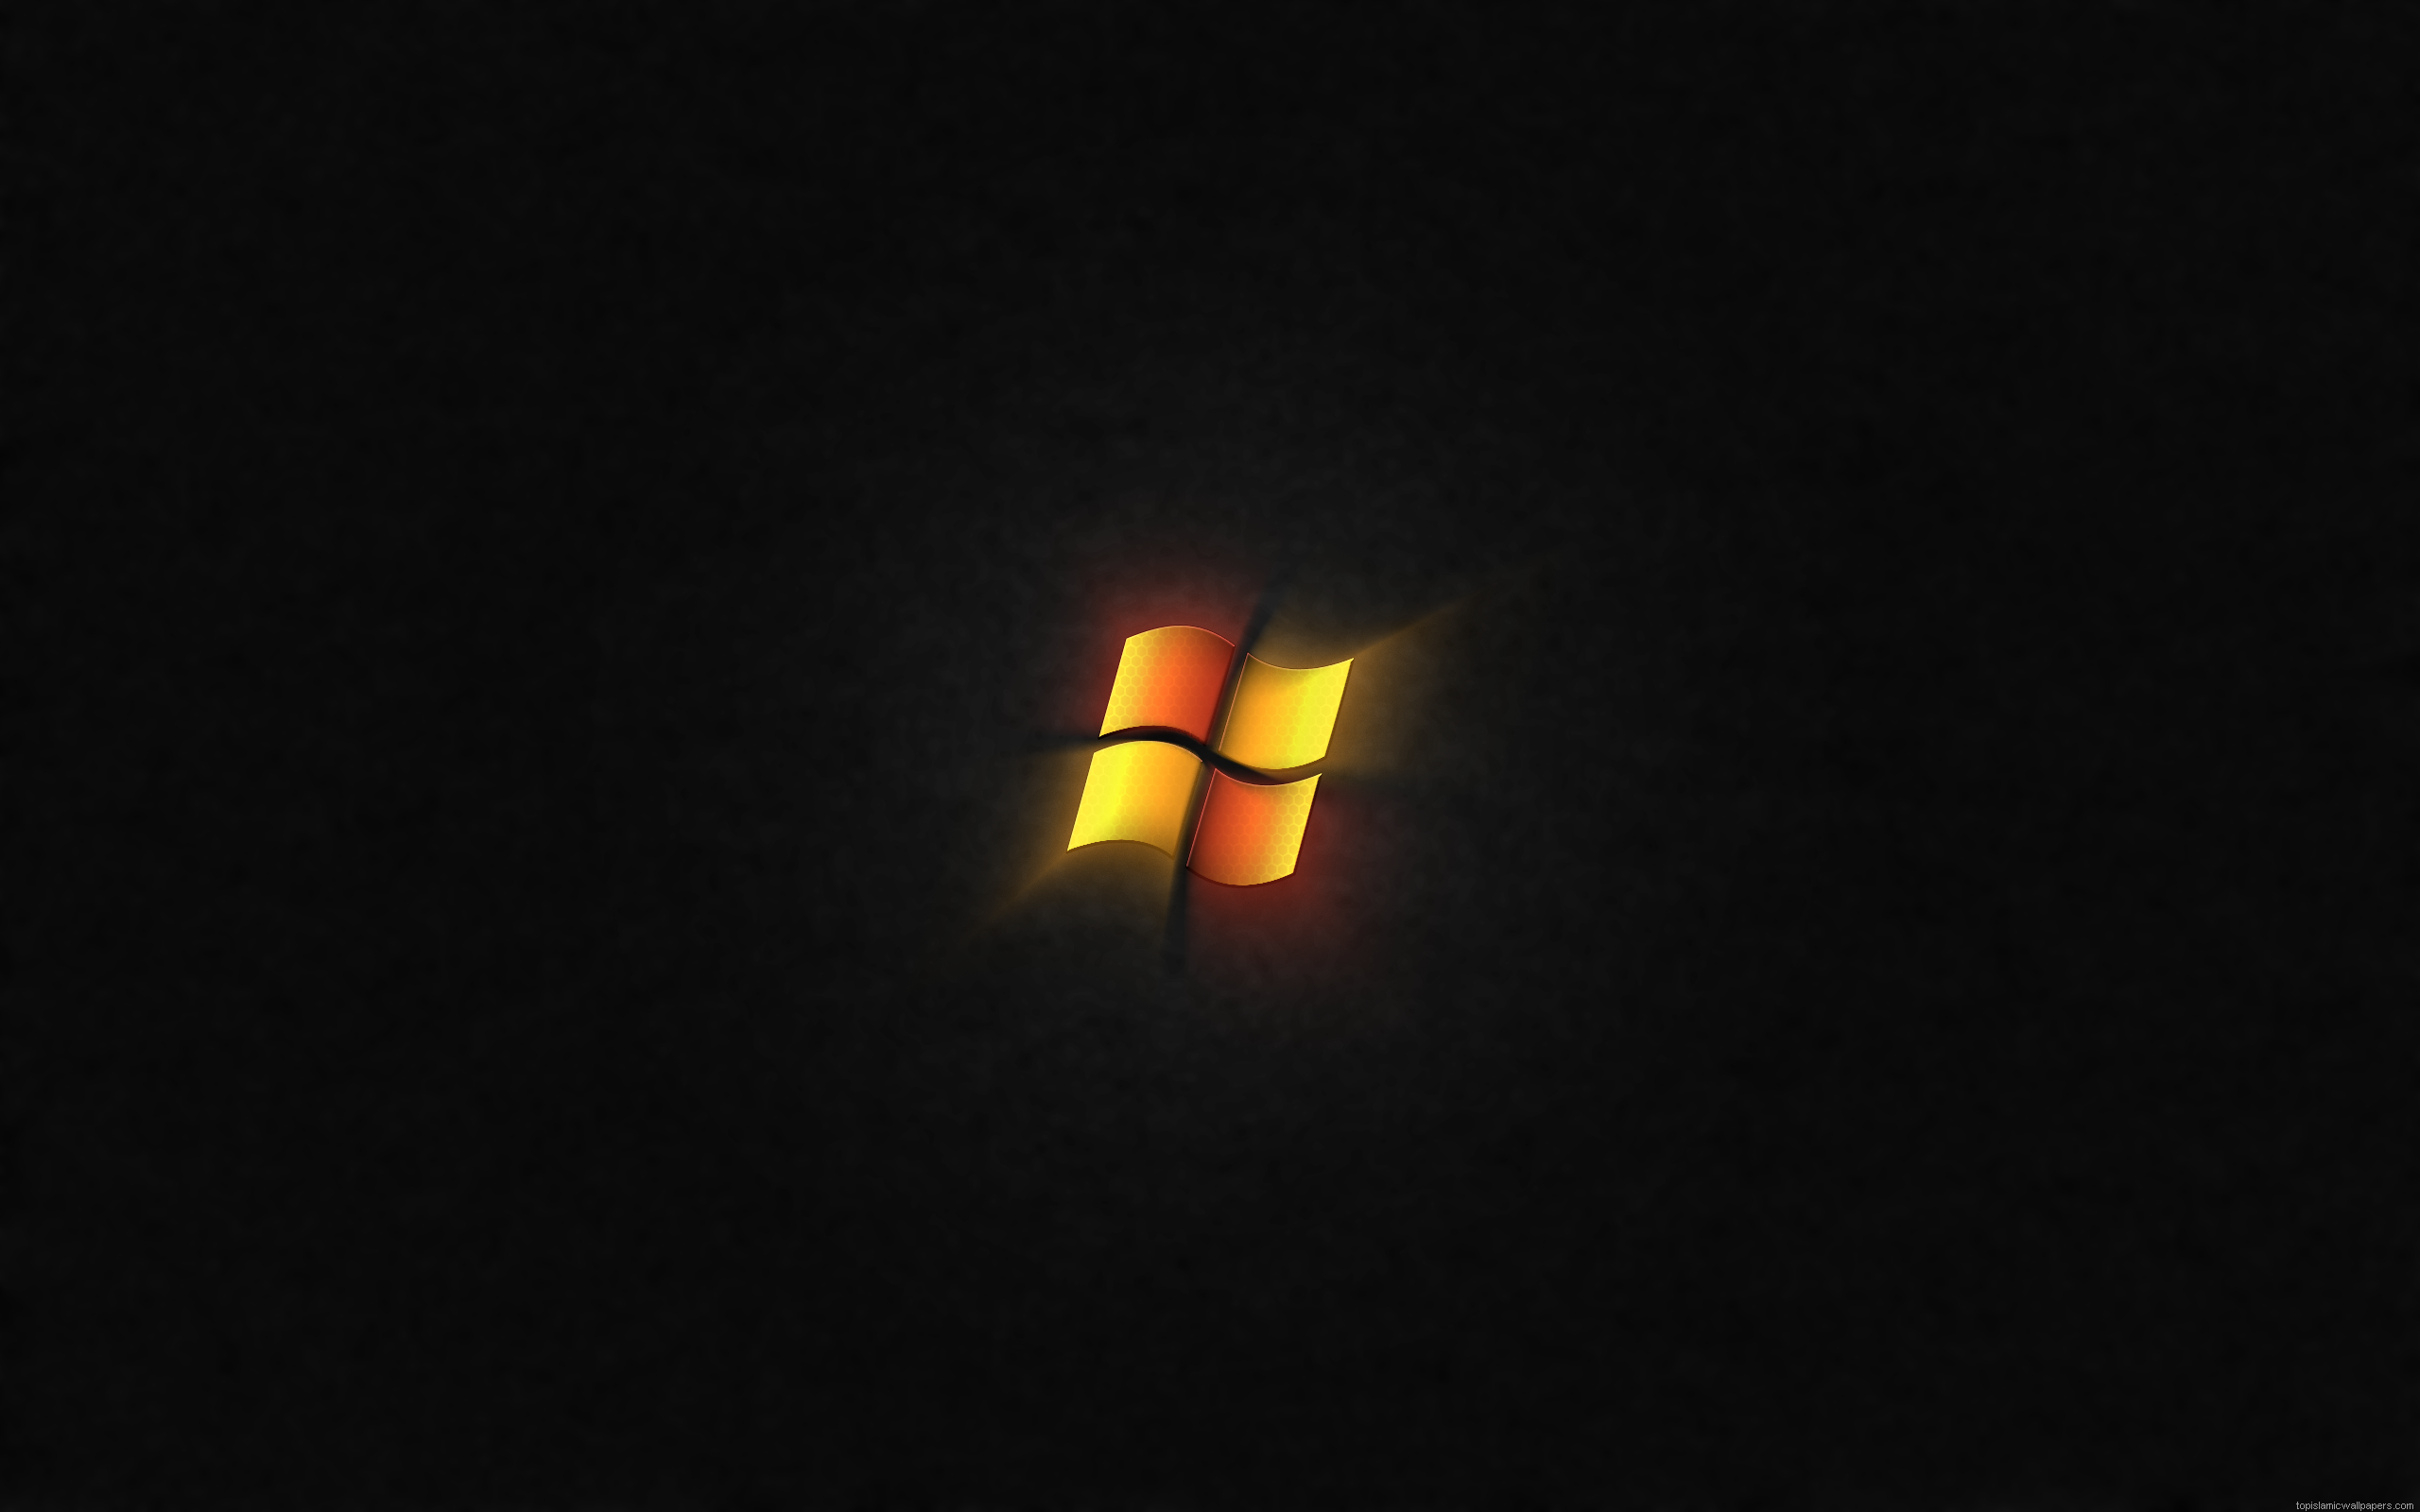 Windows HD Widescreen Glow Wallpaper For Desktop Imgstocks